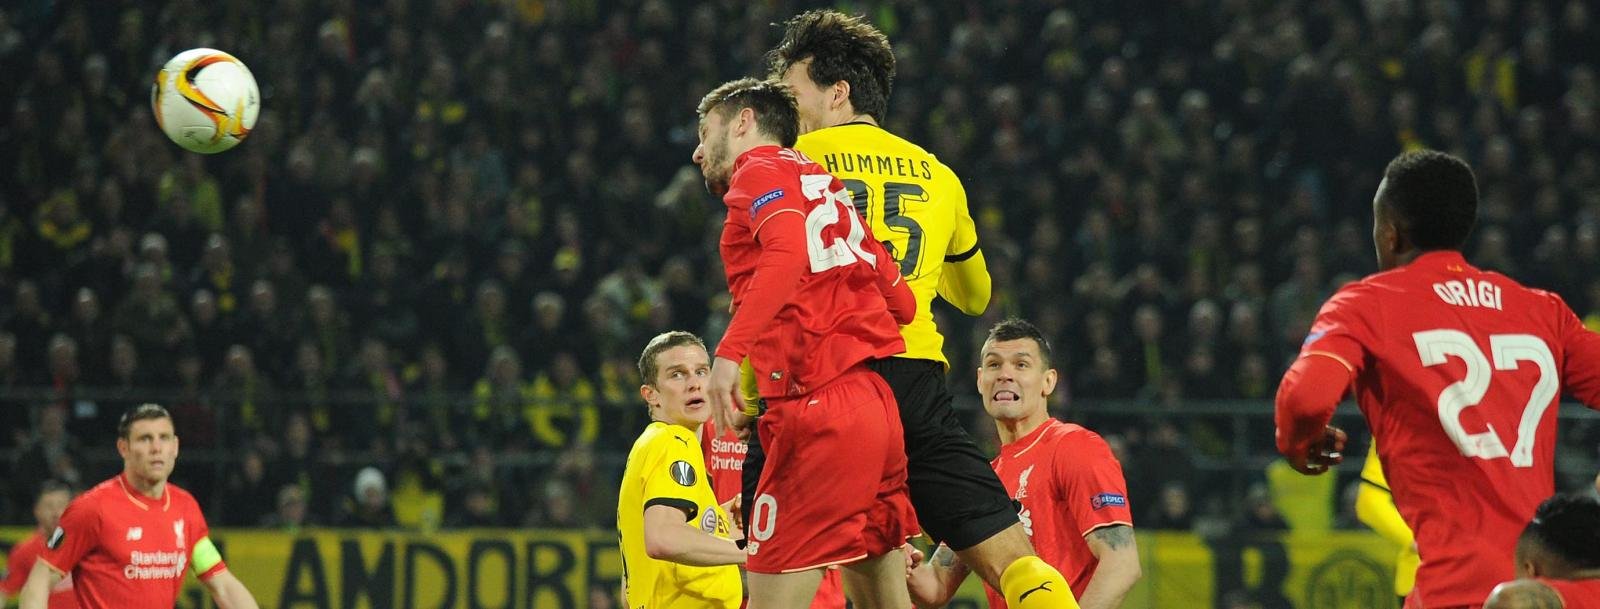 Europa League Round-Up: Liverpool grab a draw in Dortmund on Jurgen Klopp’s return